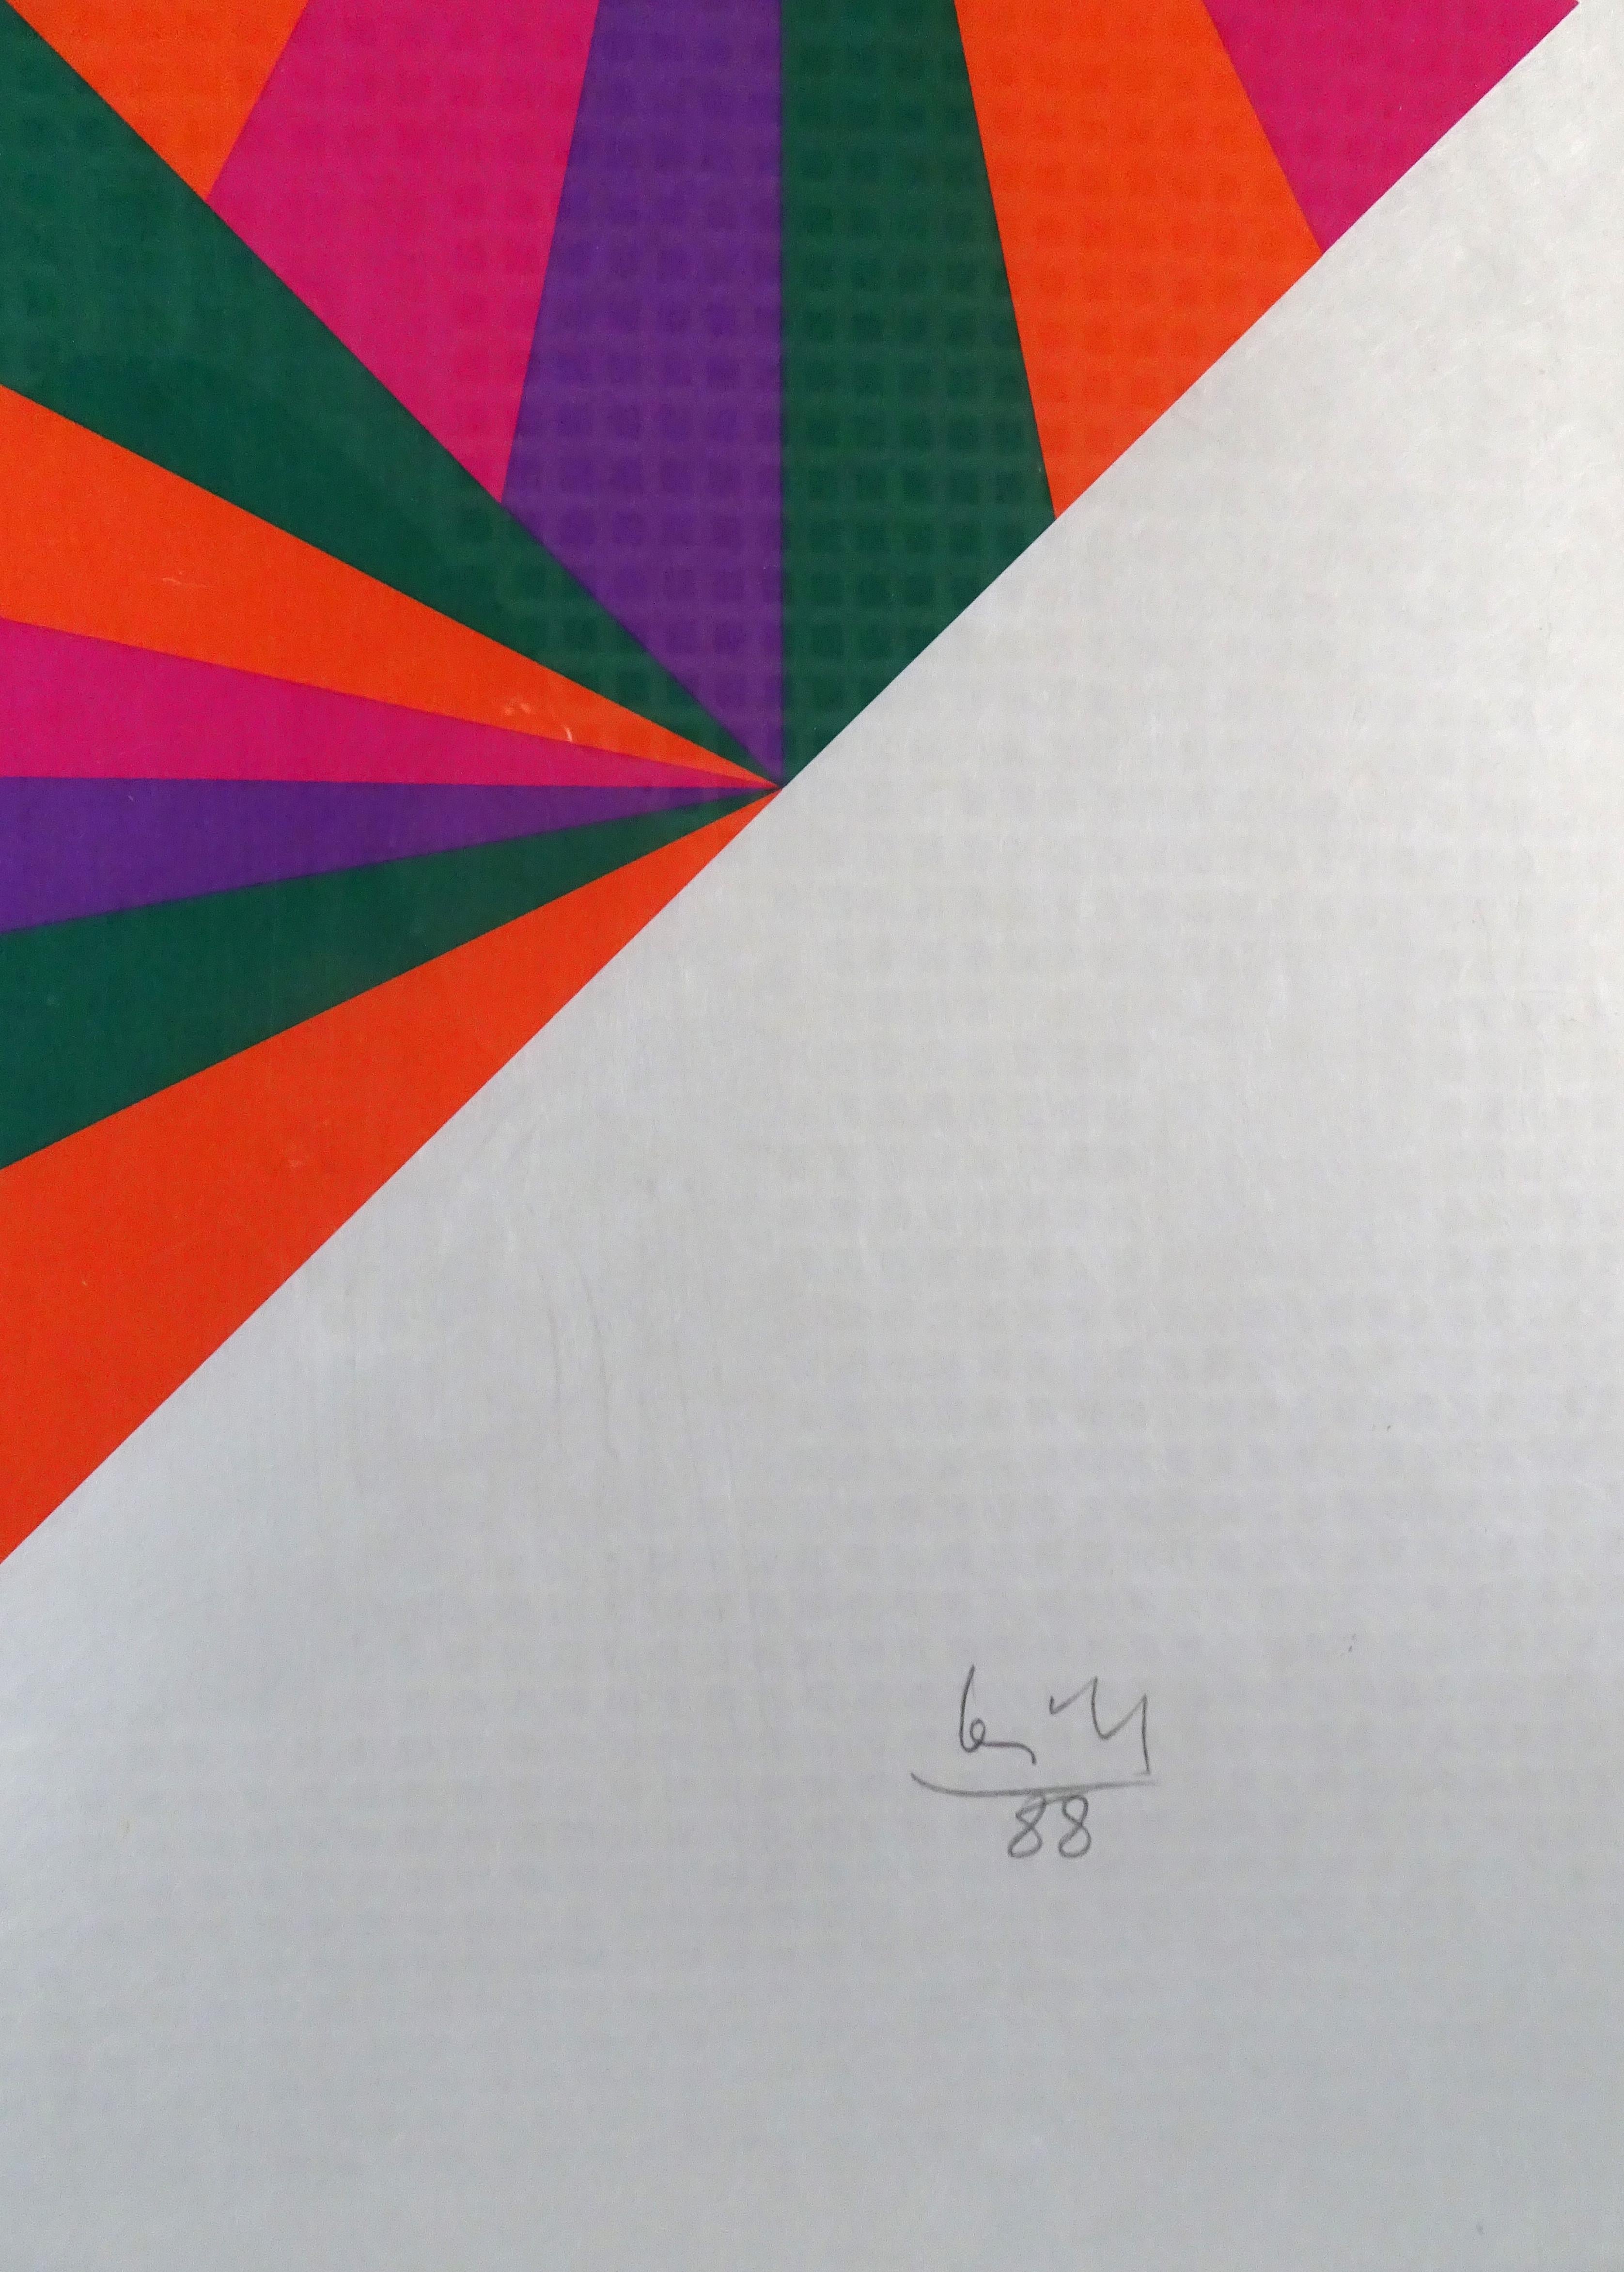 Untitled - Color Diamond  - Max Bill - Serigraph - Contemporary 2